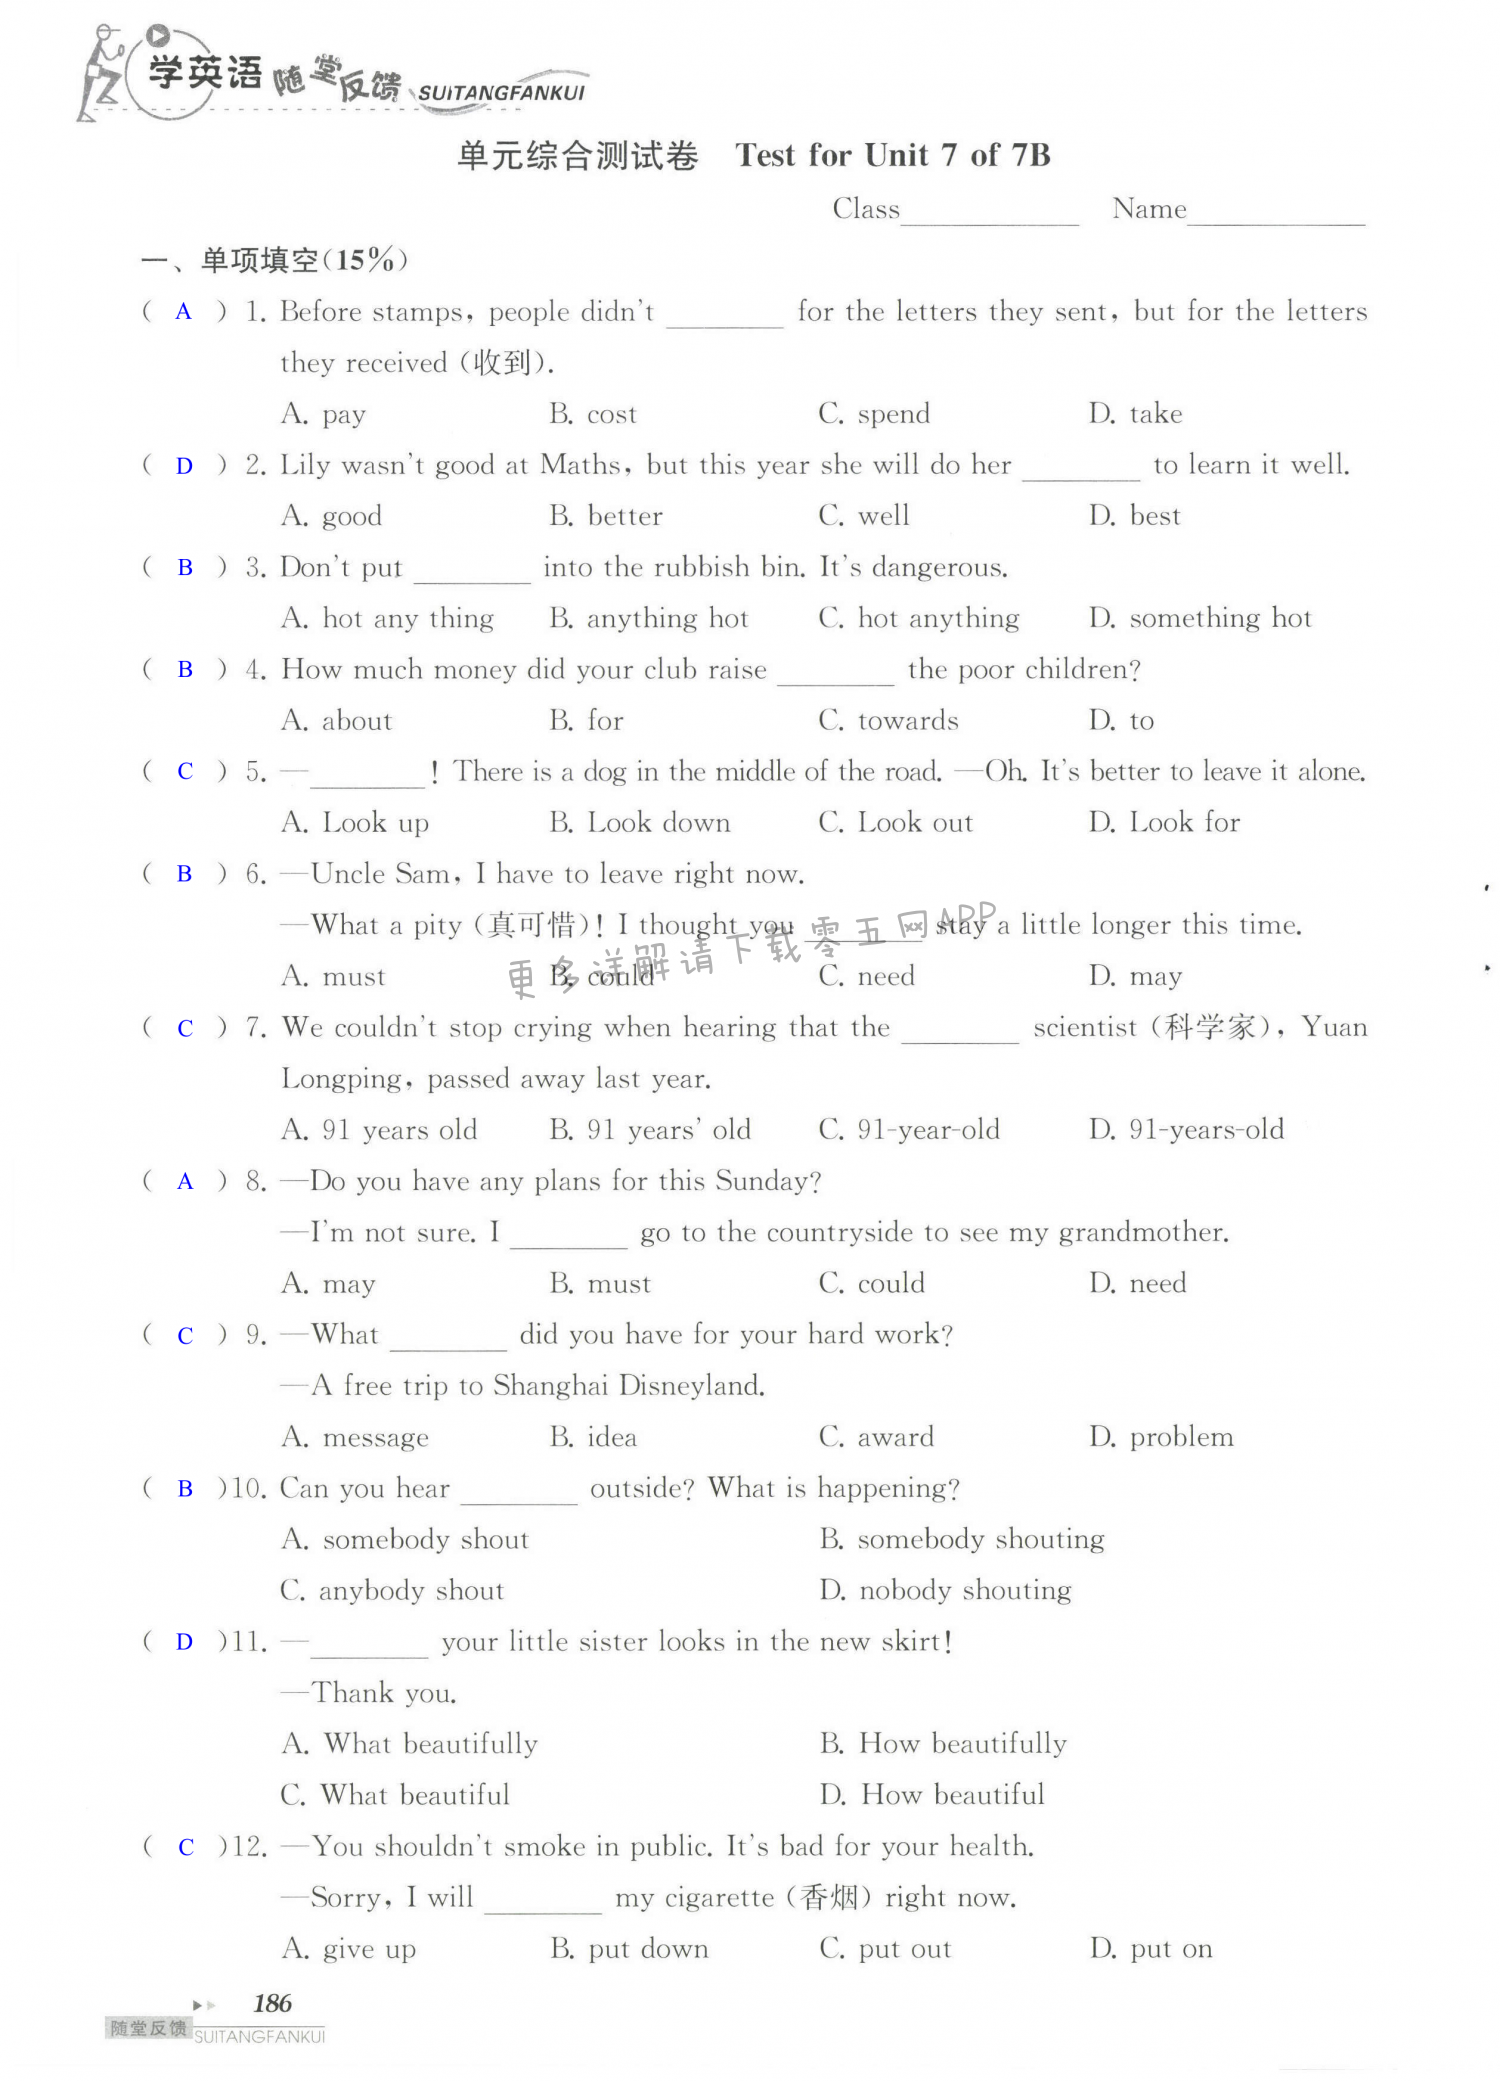 单元综合测试卷   Test for Unit 7 of 7B - 第186页